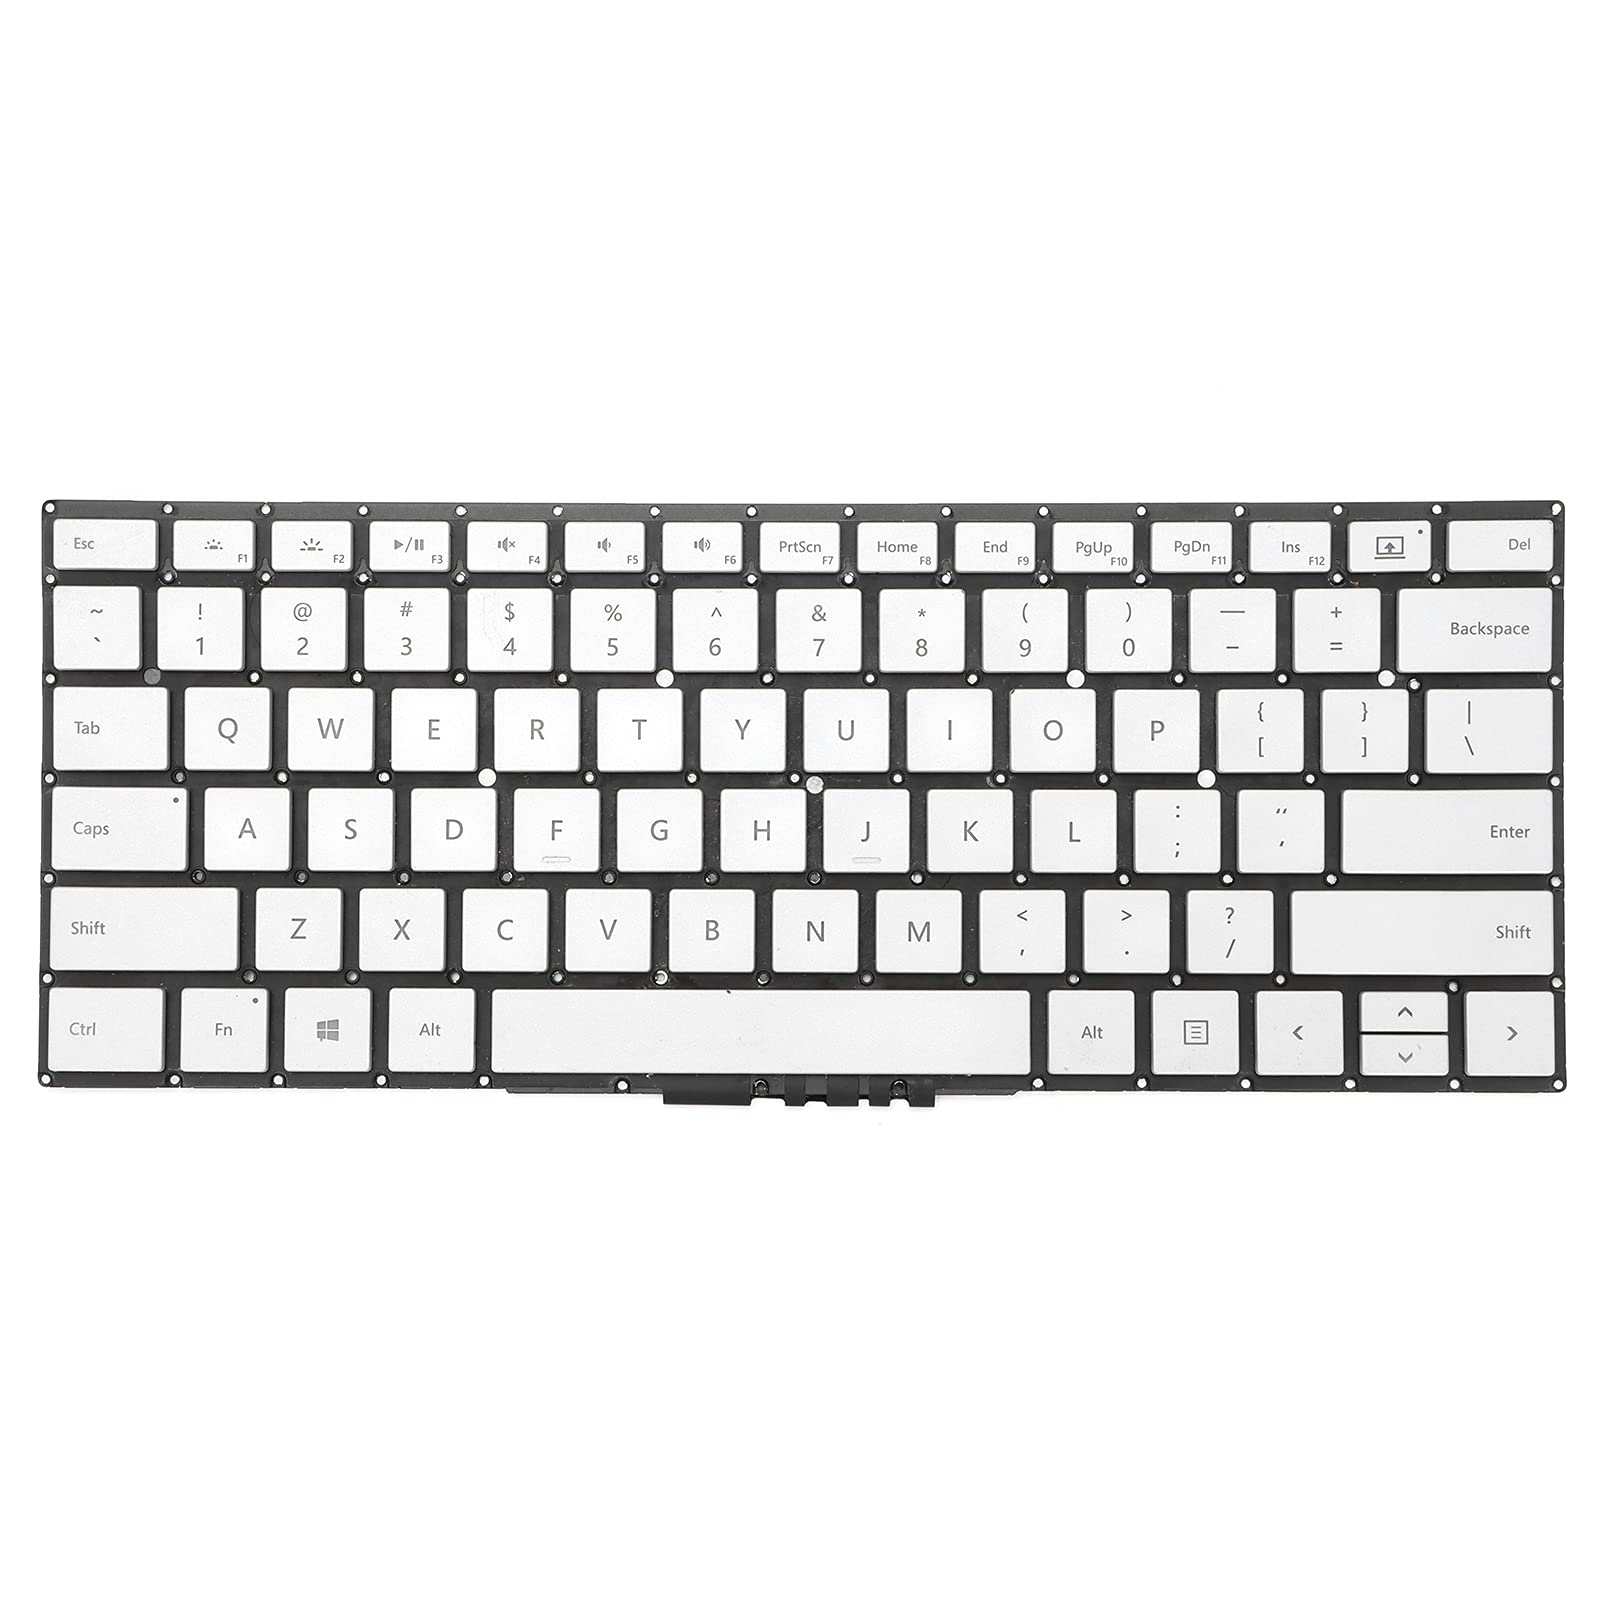 Loptop-Tastatur für Microsoft Surface Book 1 1703/1704/1705/1785, neue Ersatz-Tastaturbasis, einfaches Anstecken, Ausstecken, Silber